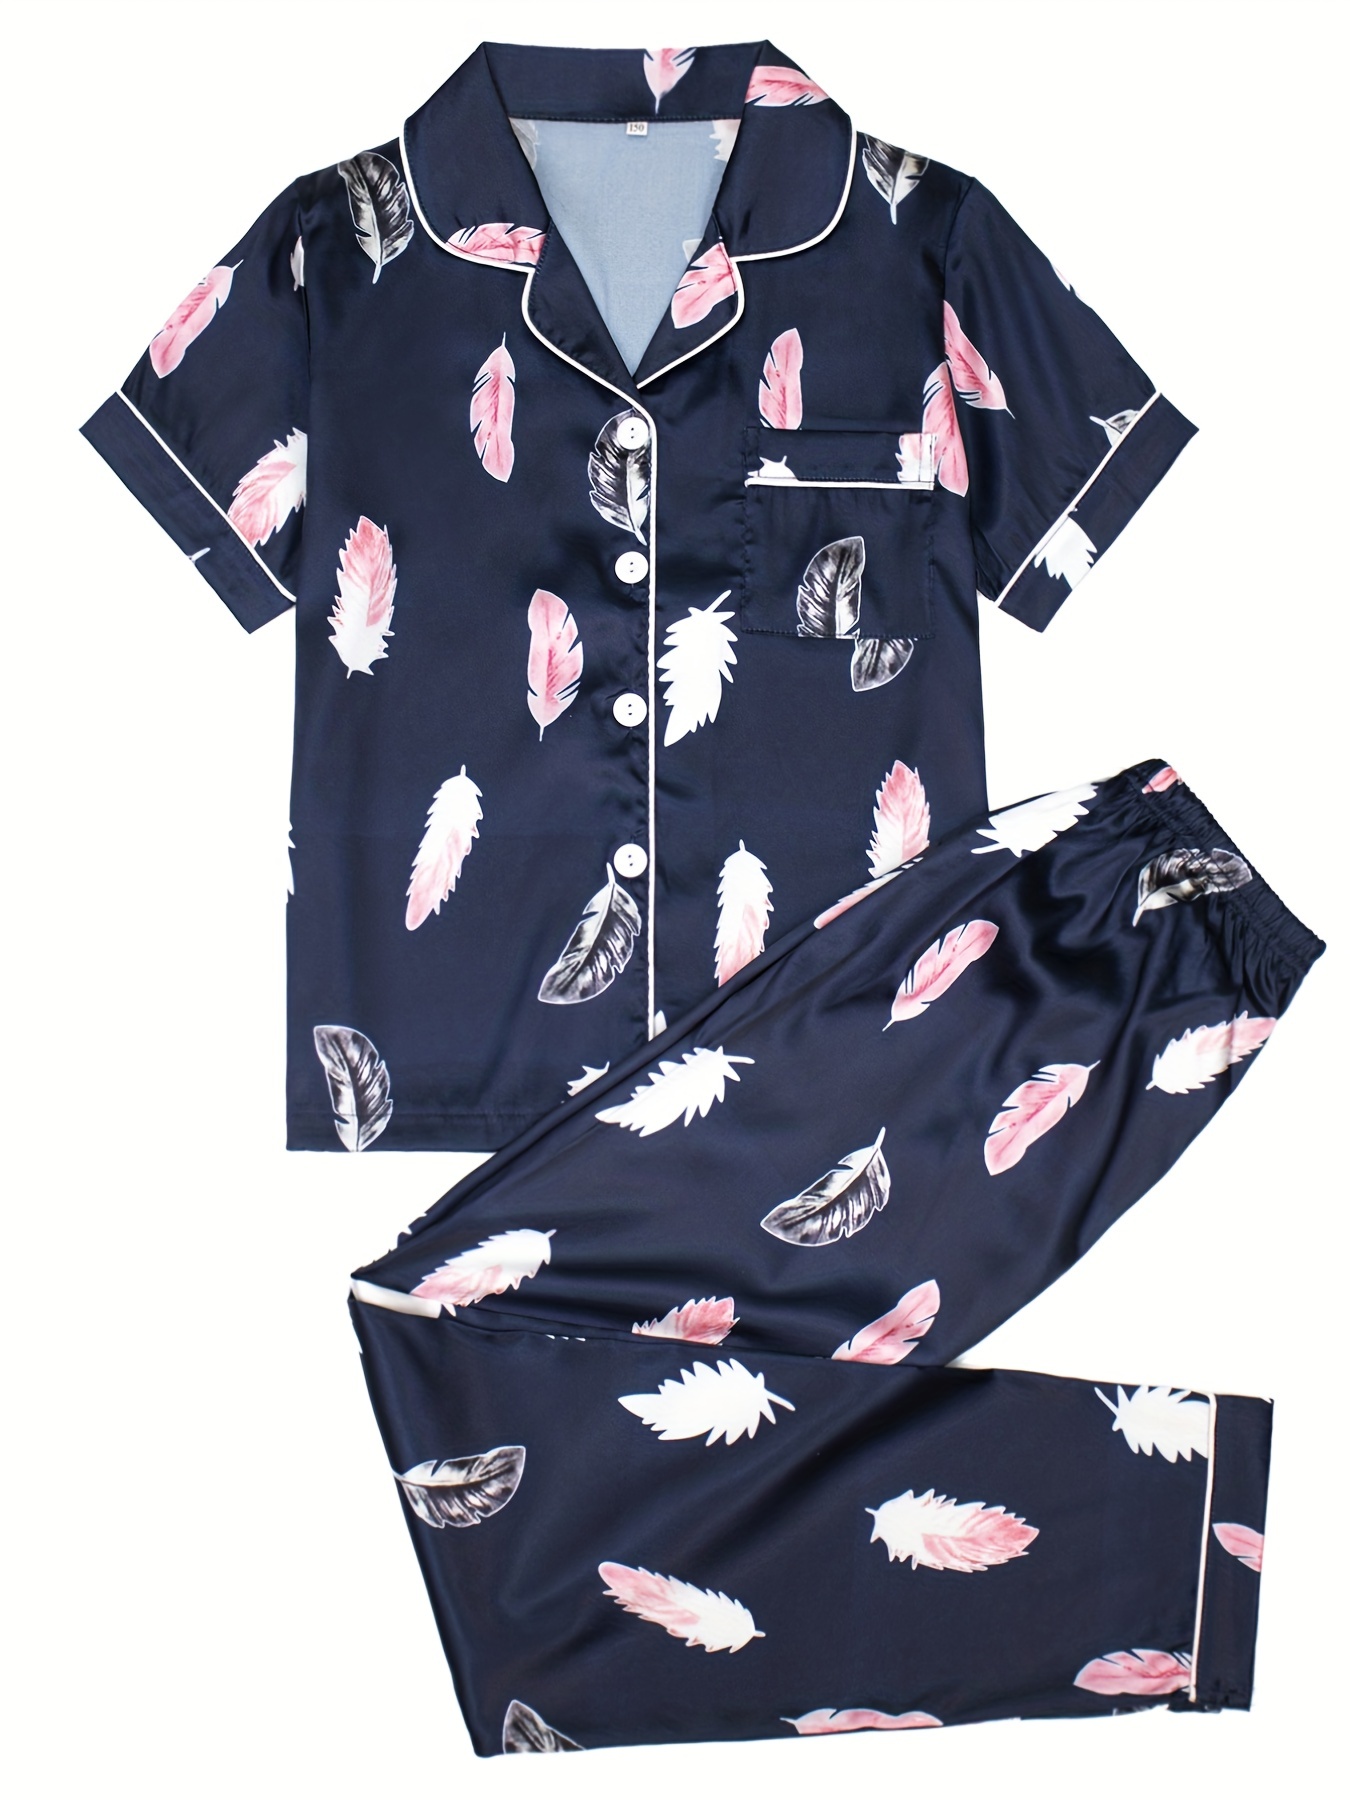 fvwitlyh Cute Pajamas Female Comfortable Popular Stripe Pijamas